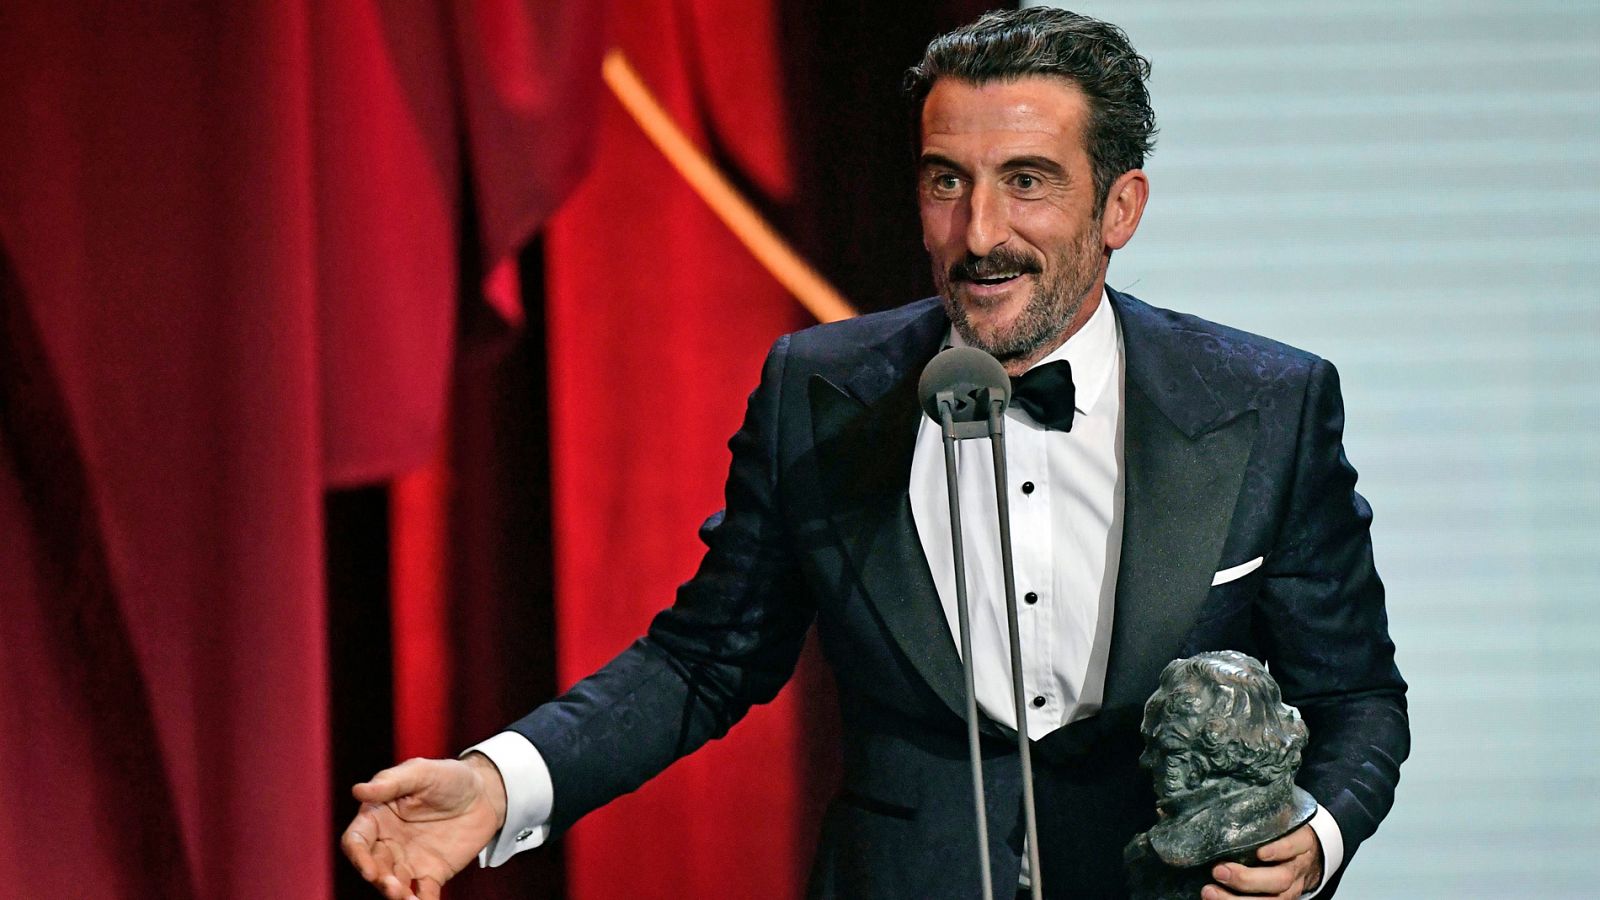 Premios Goya: Luis Zahera, Goya al mejor actor de reparto por 'El reino', da las gracias a su 'Julieta' particular -- RTVE.es